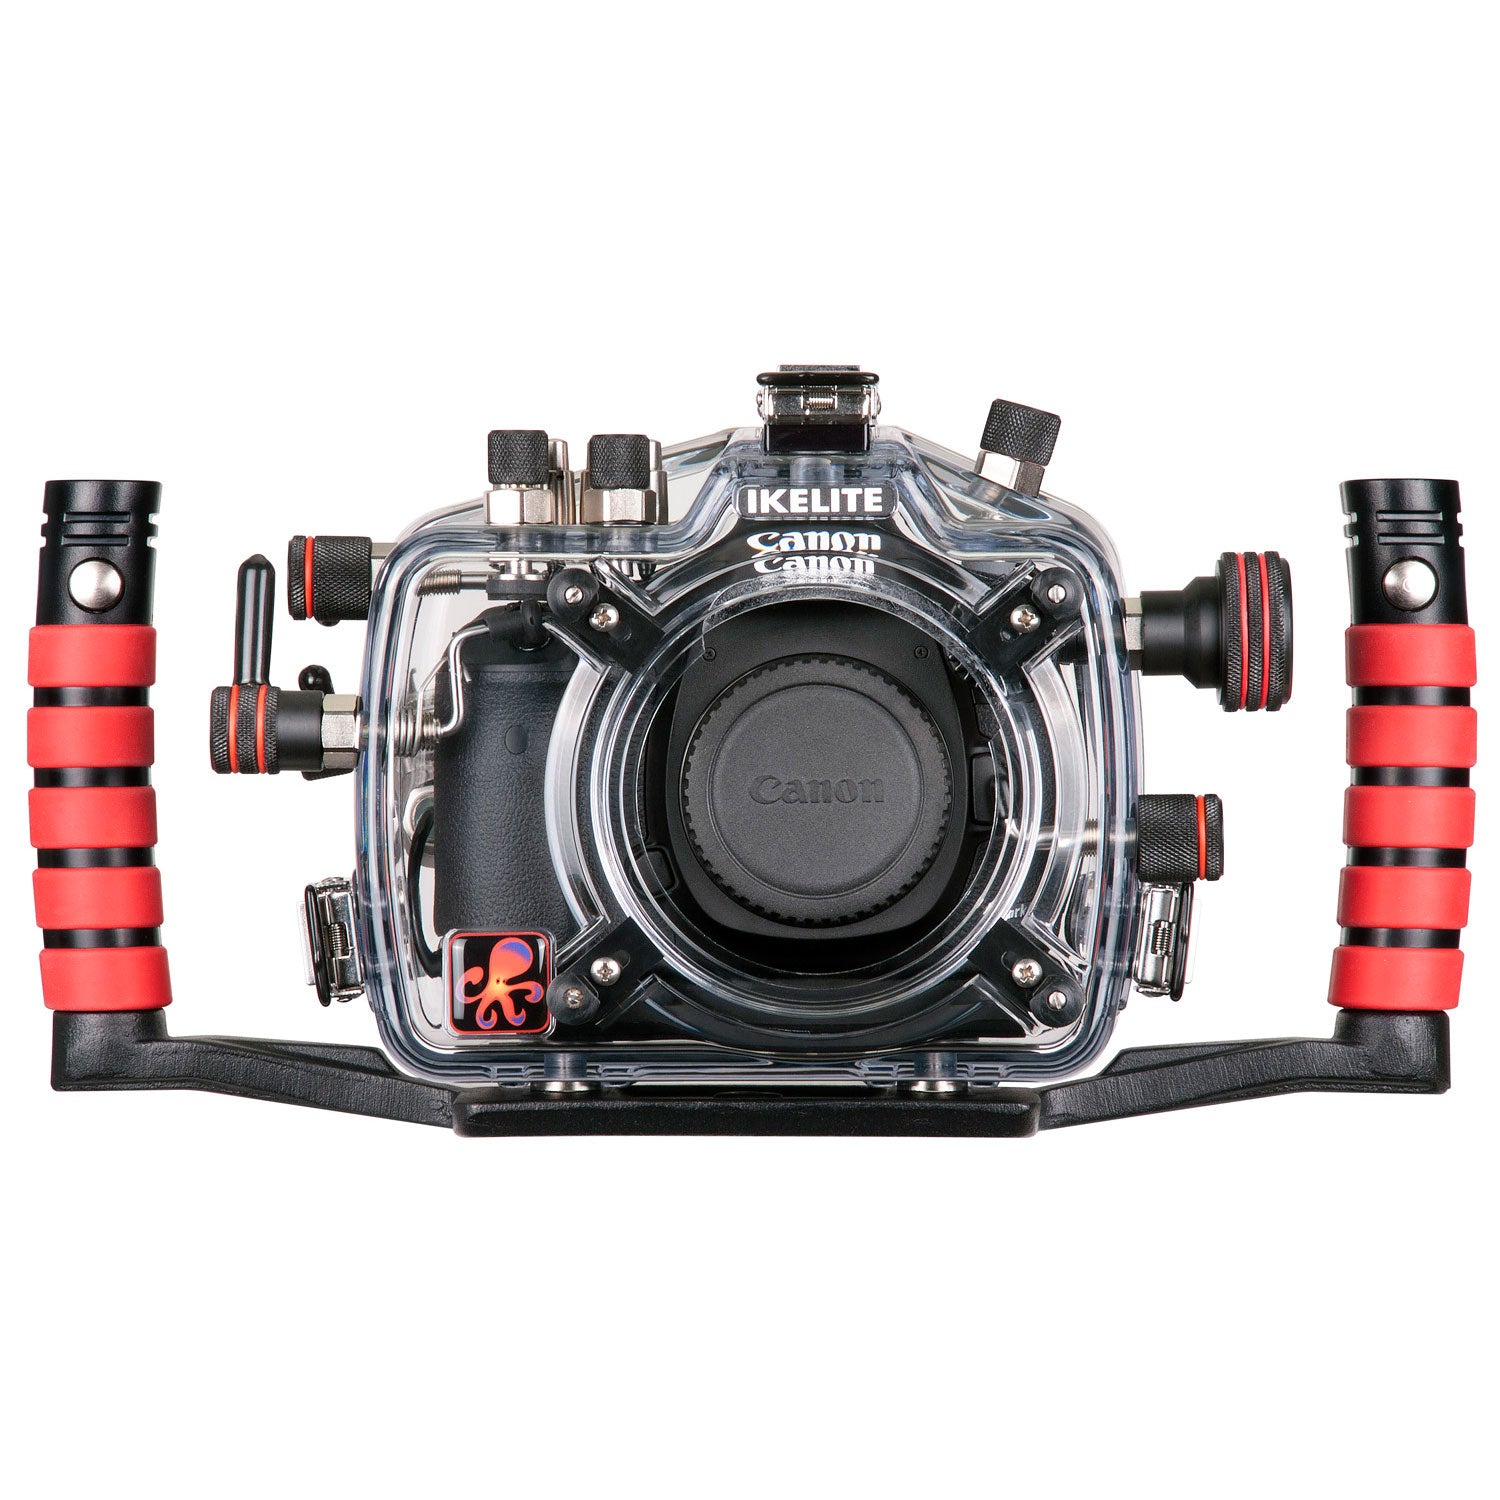 200FL Underwater TTL Housing for Canon EOS 5D Mark III DSLR